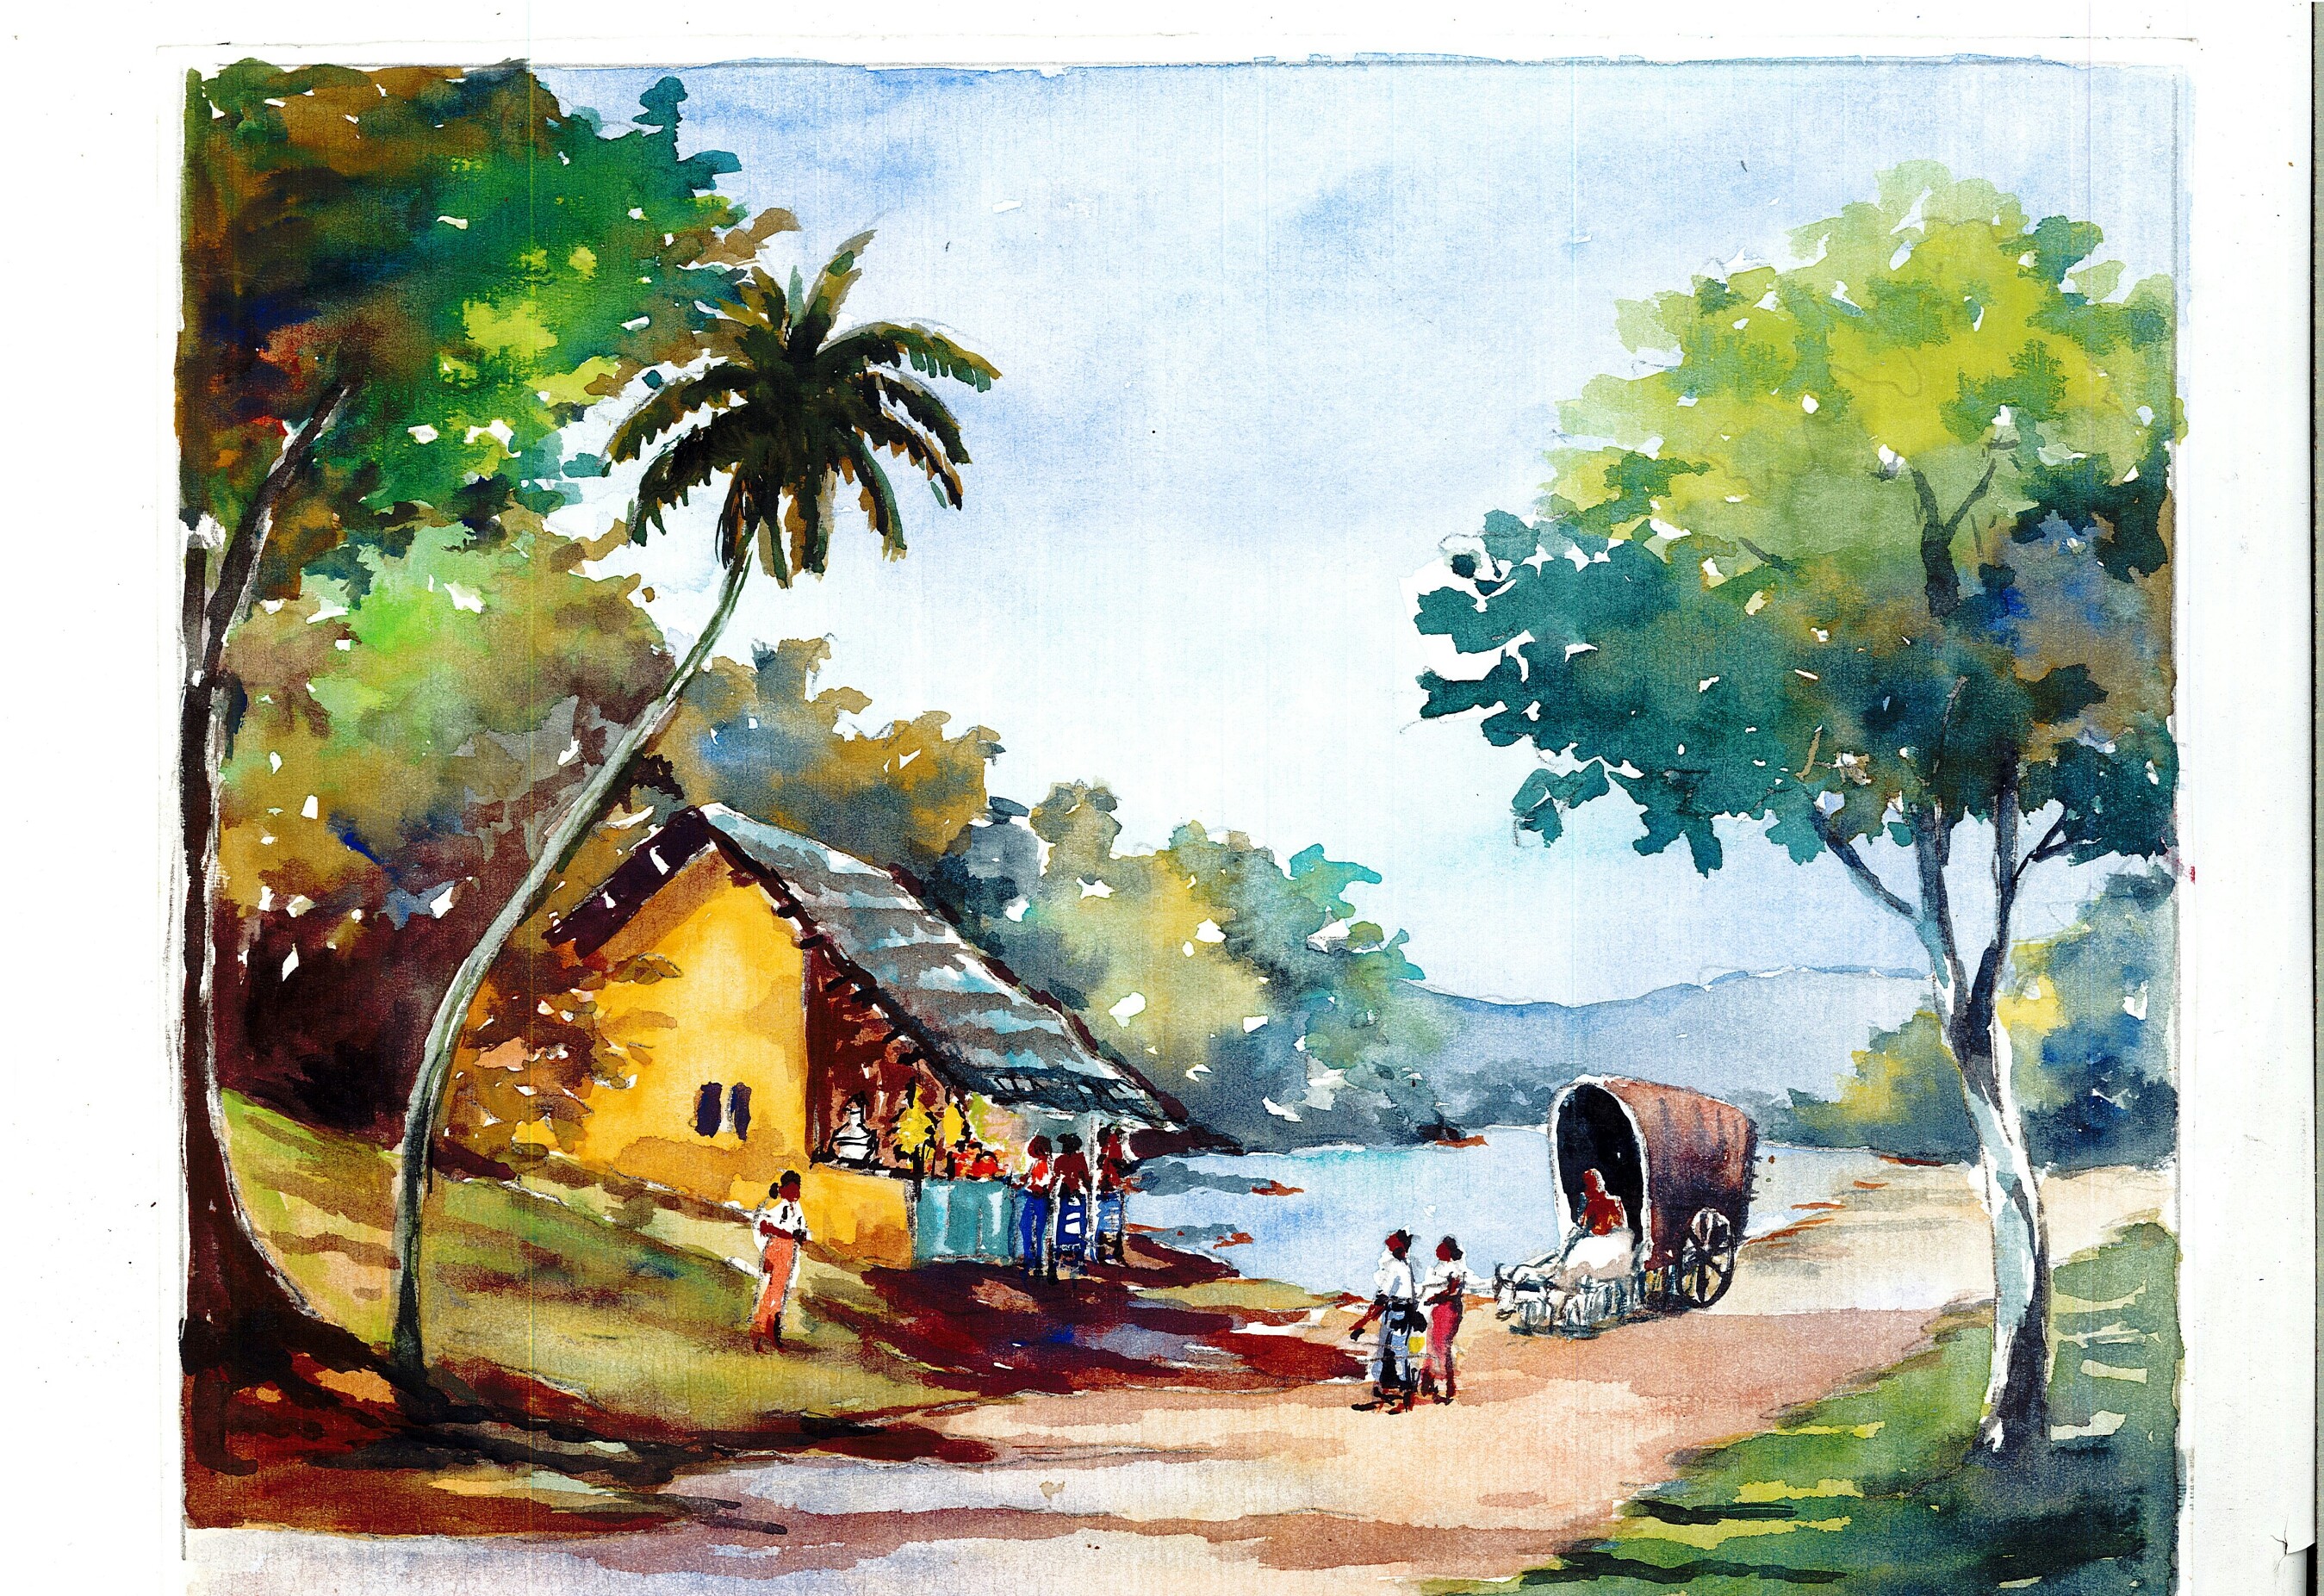 Village by Mangala Madanayake